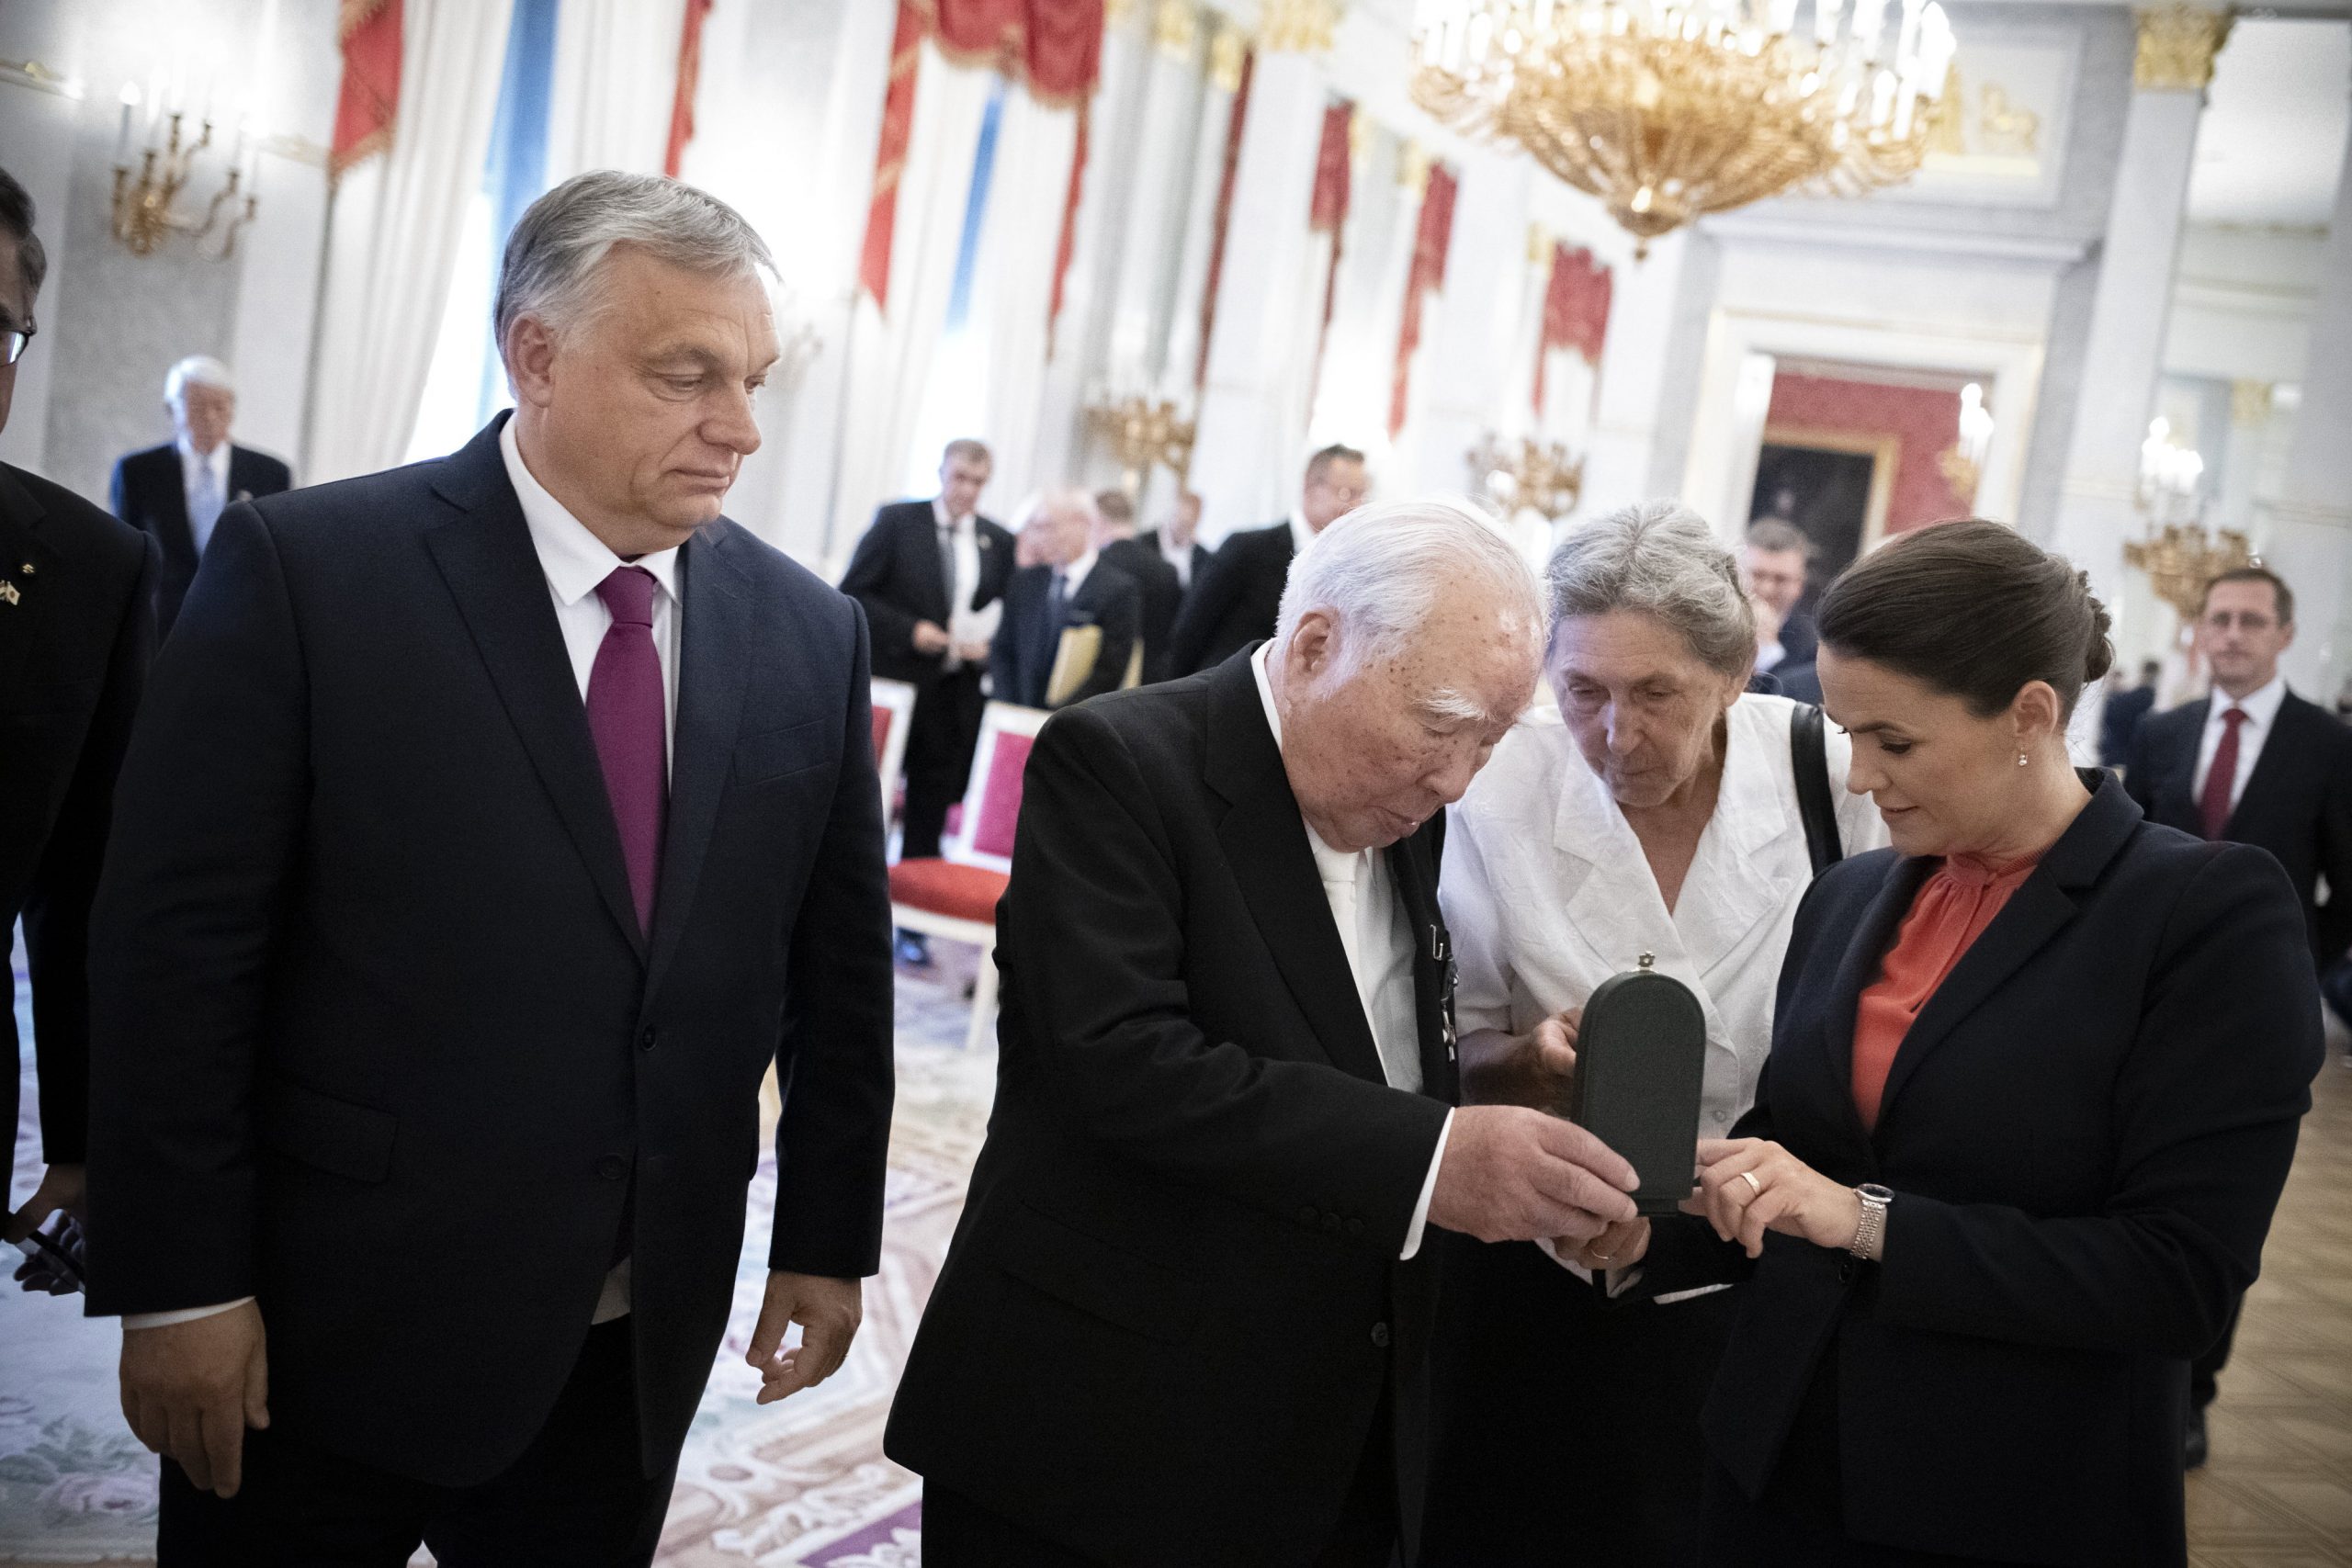 Katalin Novák und Viktor Orbán ehrten den Präsidenten von Suzuki